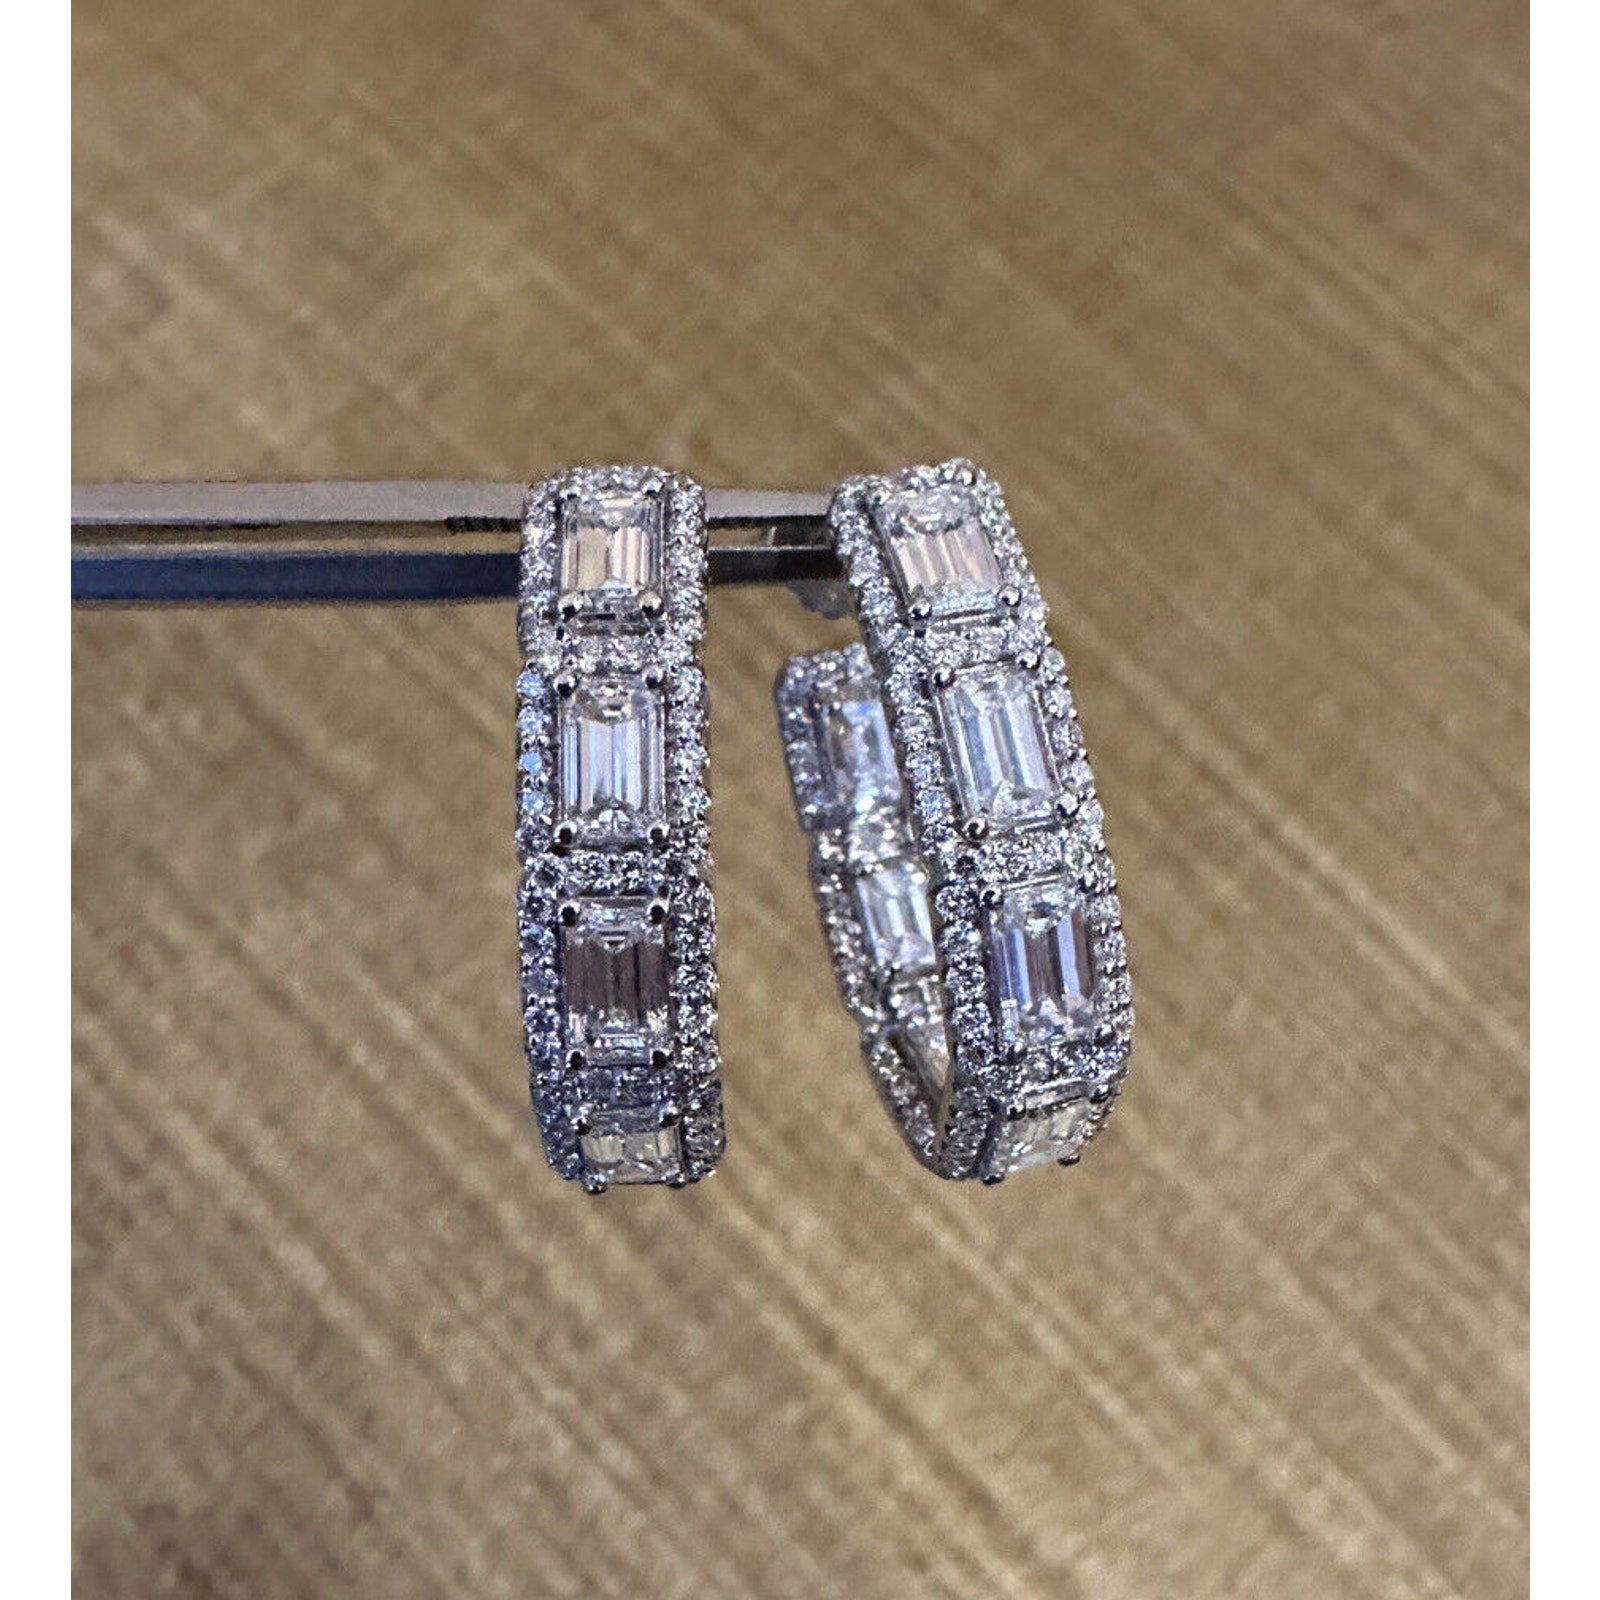 Emerald Cut & Round Diamond Hoop Earrings in 18k White Gold - HM2527BA